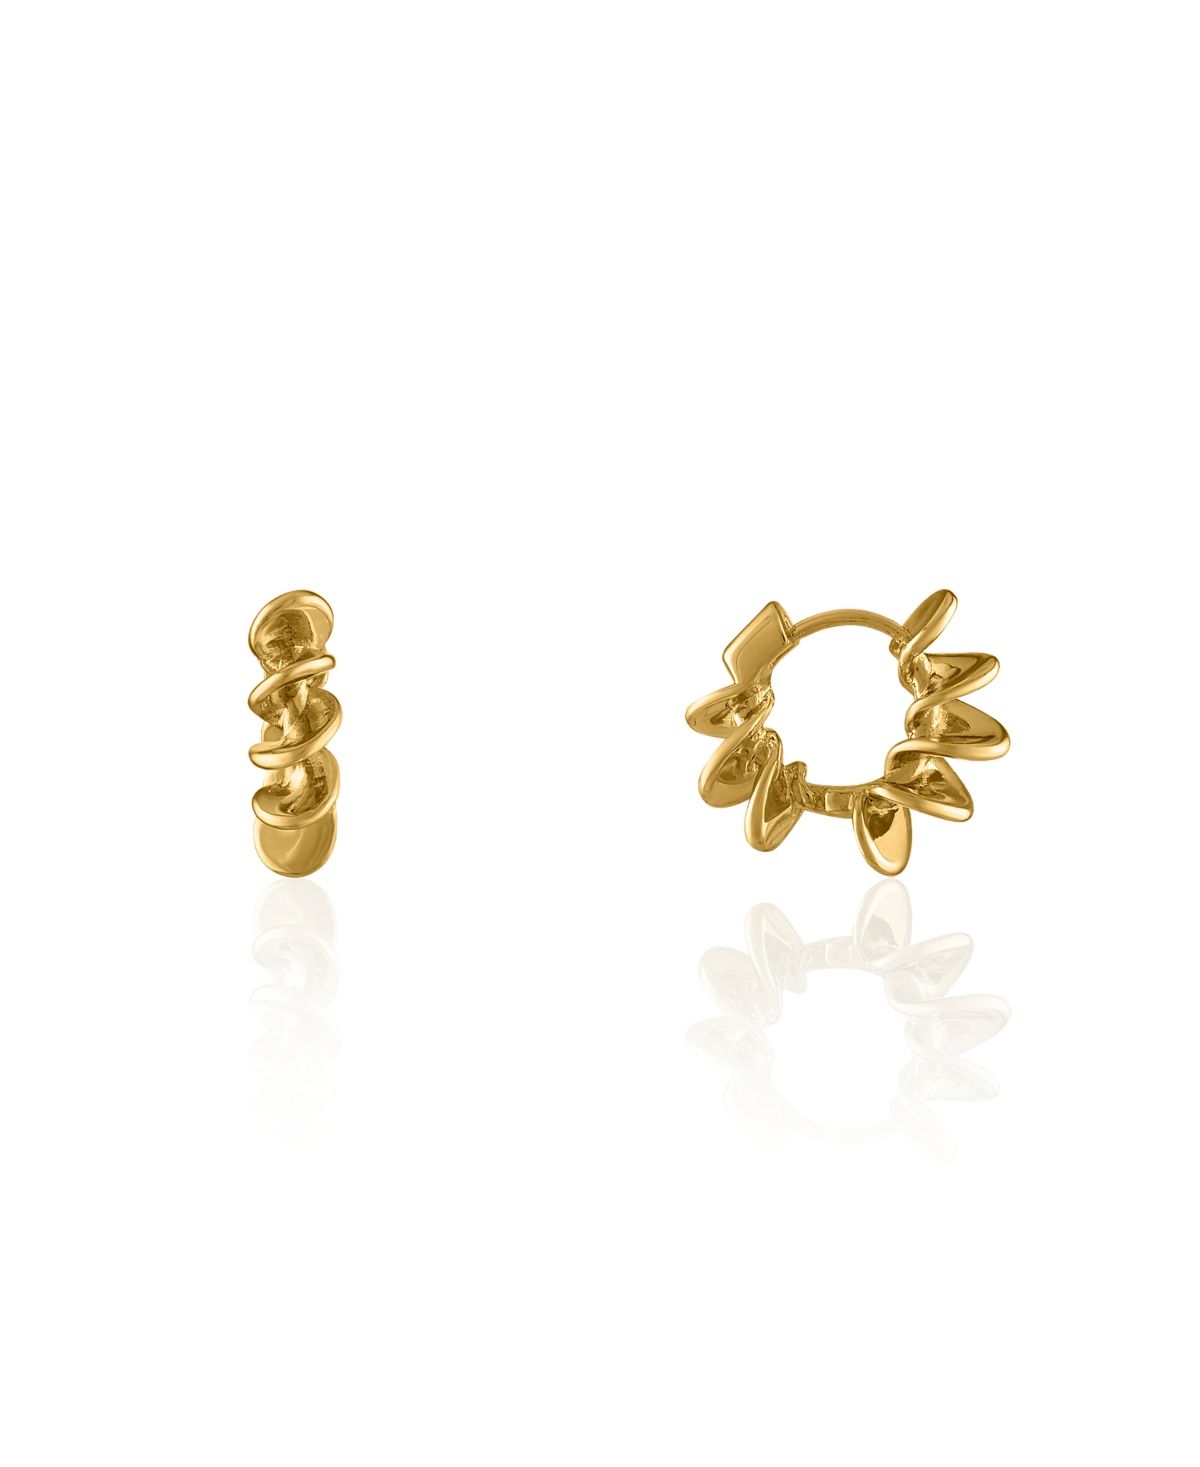 The Arlig Stainless Steel Earrings - Gold